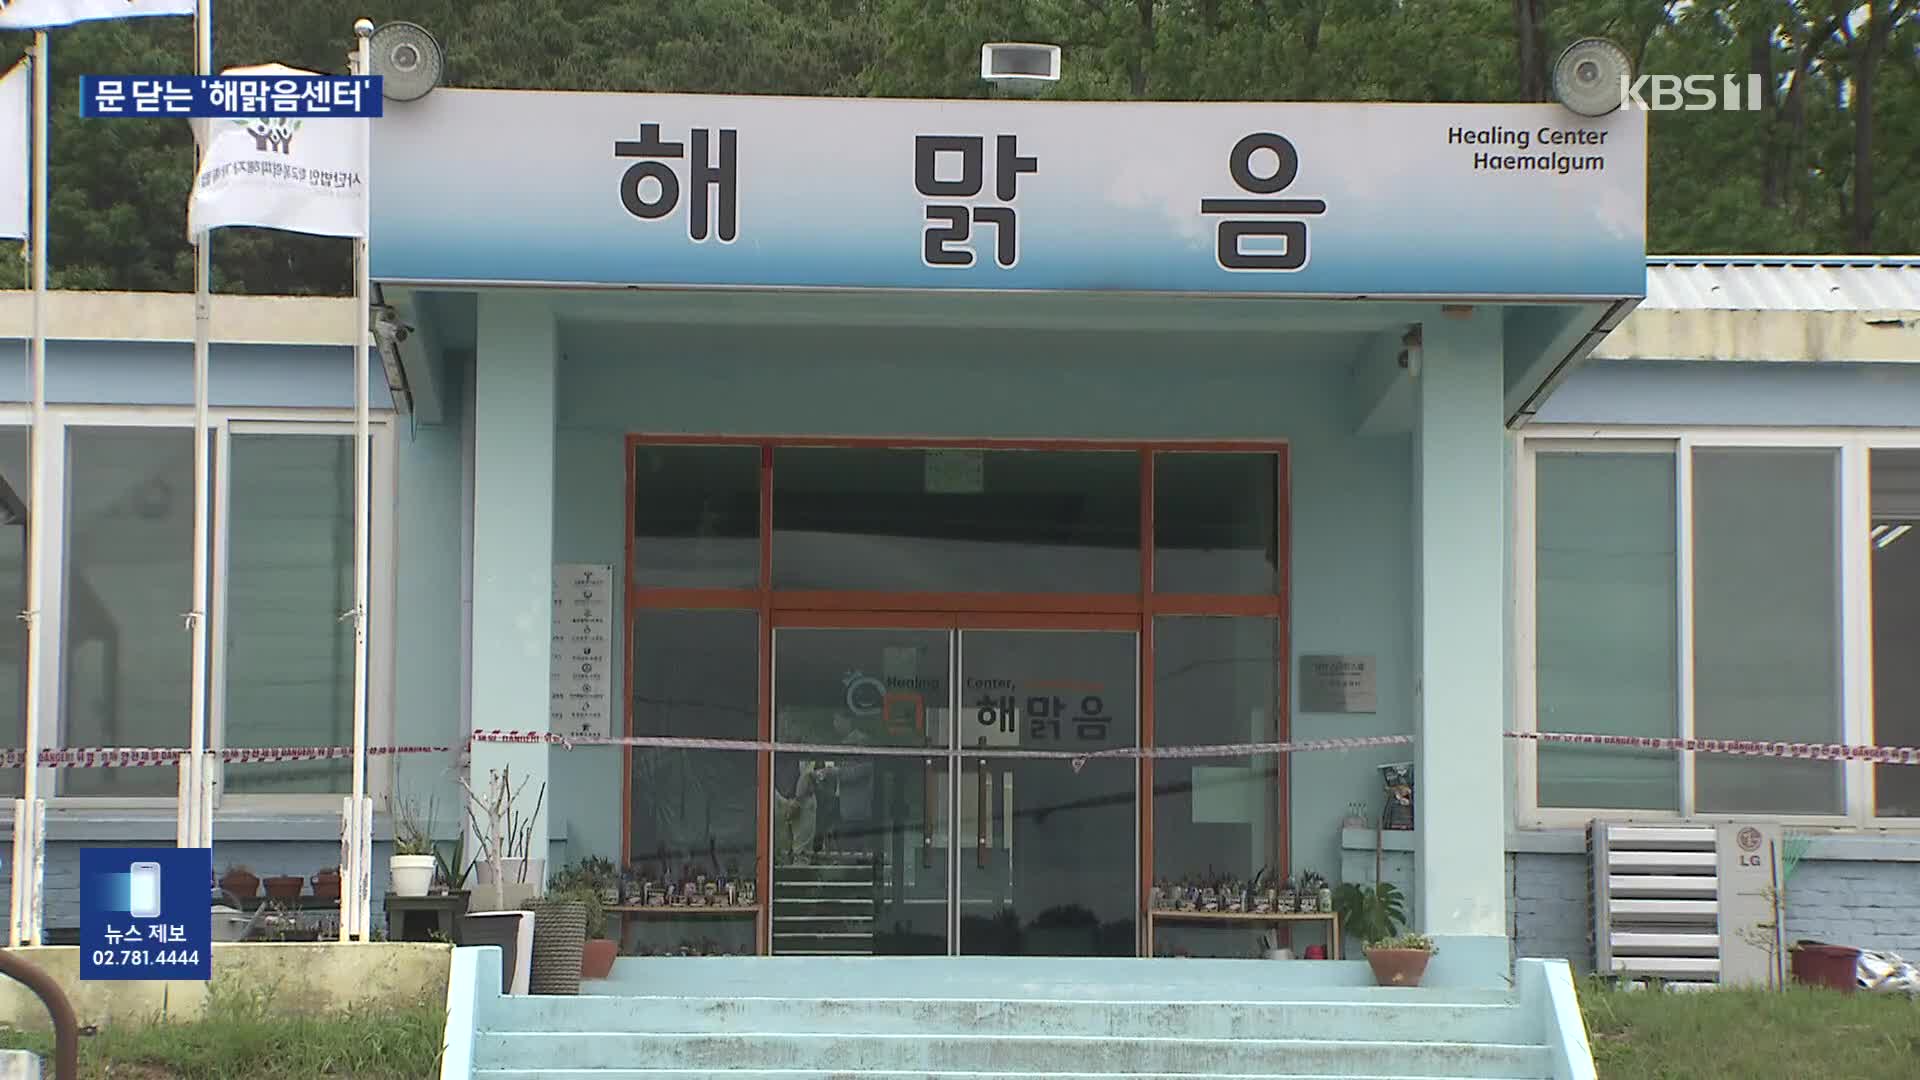 눈물의 수료식…학폭피해시설 ‘해맑음센터’ 폐쇄